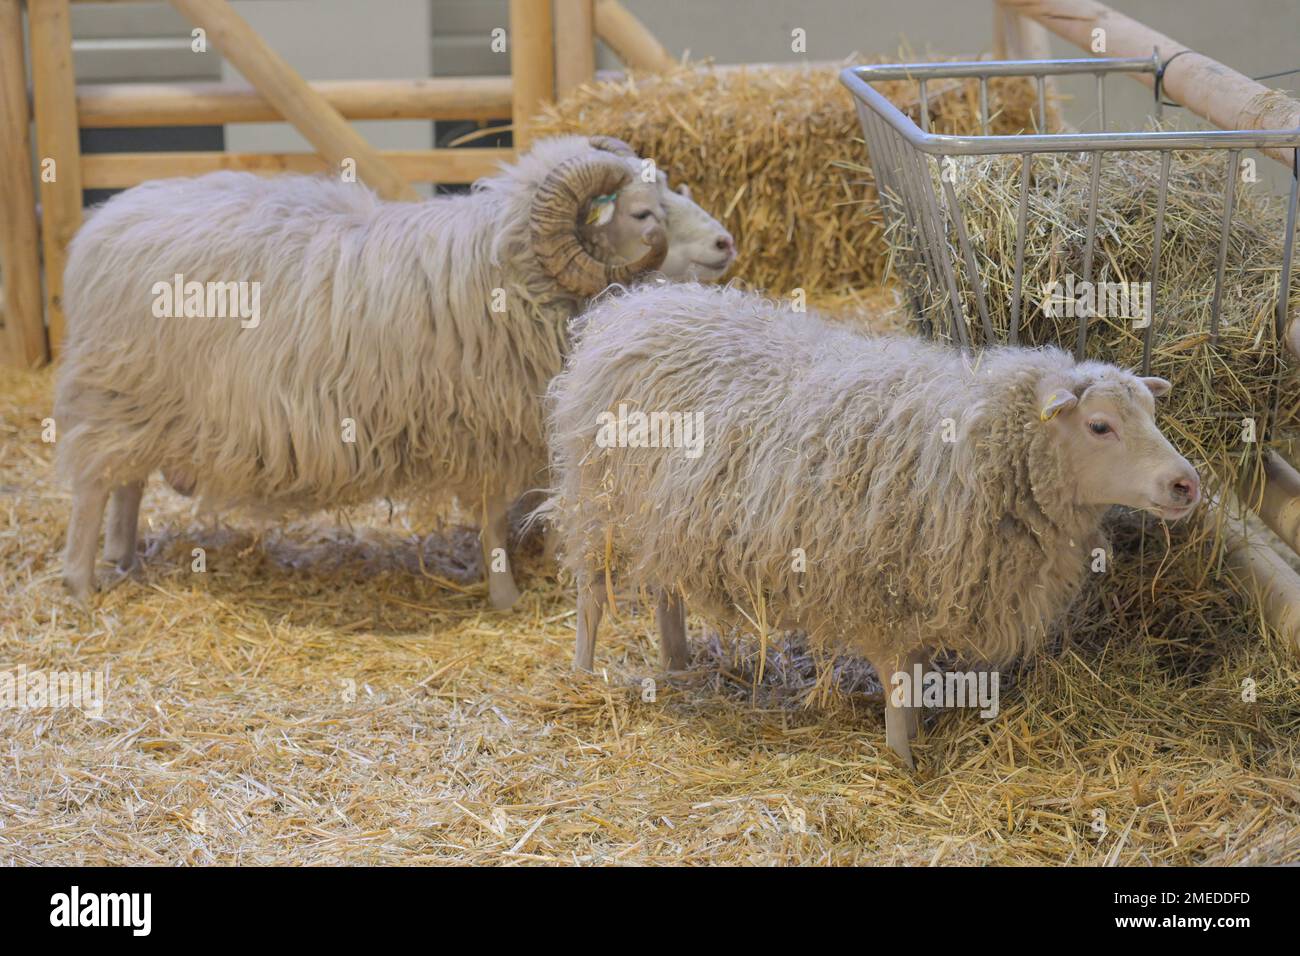 Schafe, Skudden, Tierhalle, Messe, Internationale Grüne Woche, Messegelände, Charlottenburg, Berlin, Deutschland Stock Photo